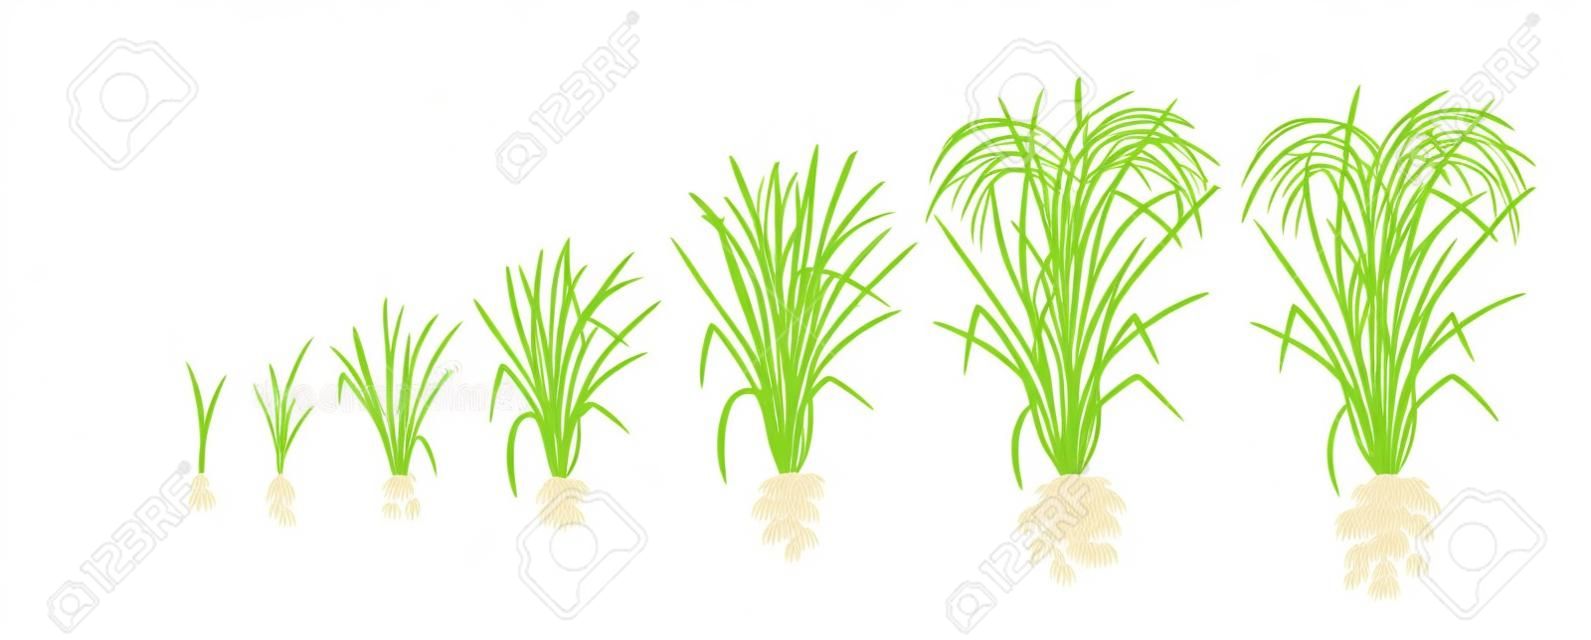 稲の成長段階米は相を増やす。ベクターの図。イネ。熟成期間。ライフサイクル。肥料を使用してください。白い背景に。世界で3番目に高い生産を持つ農産物です。